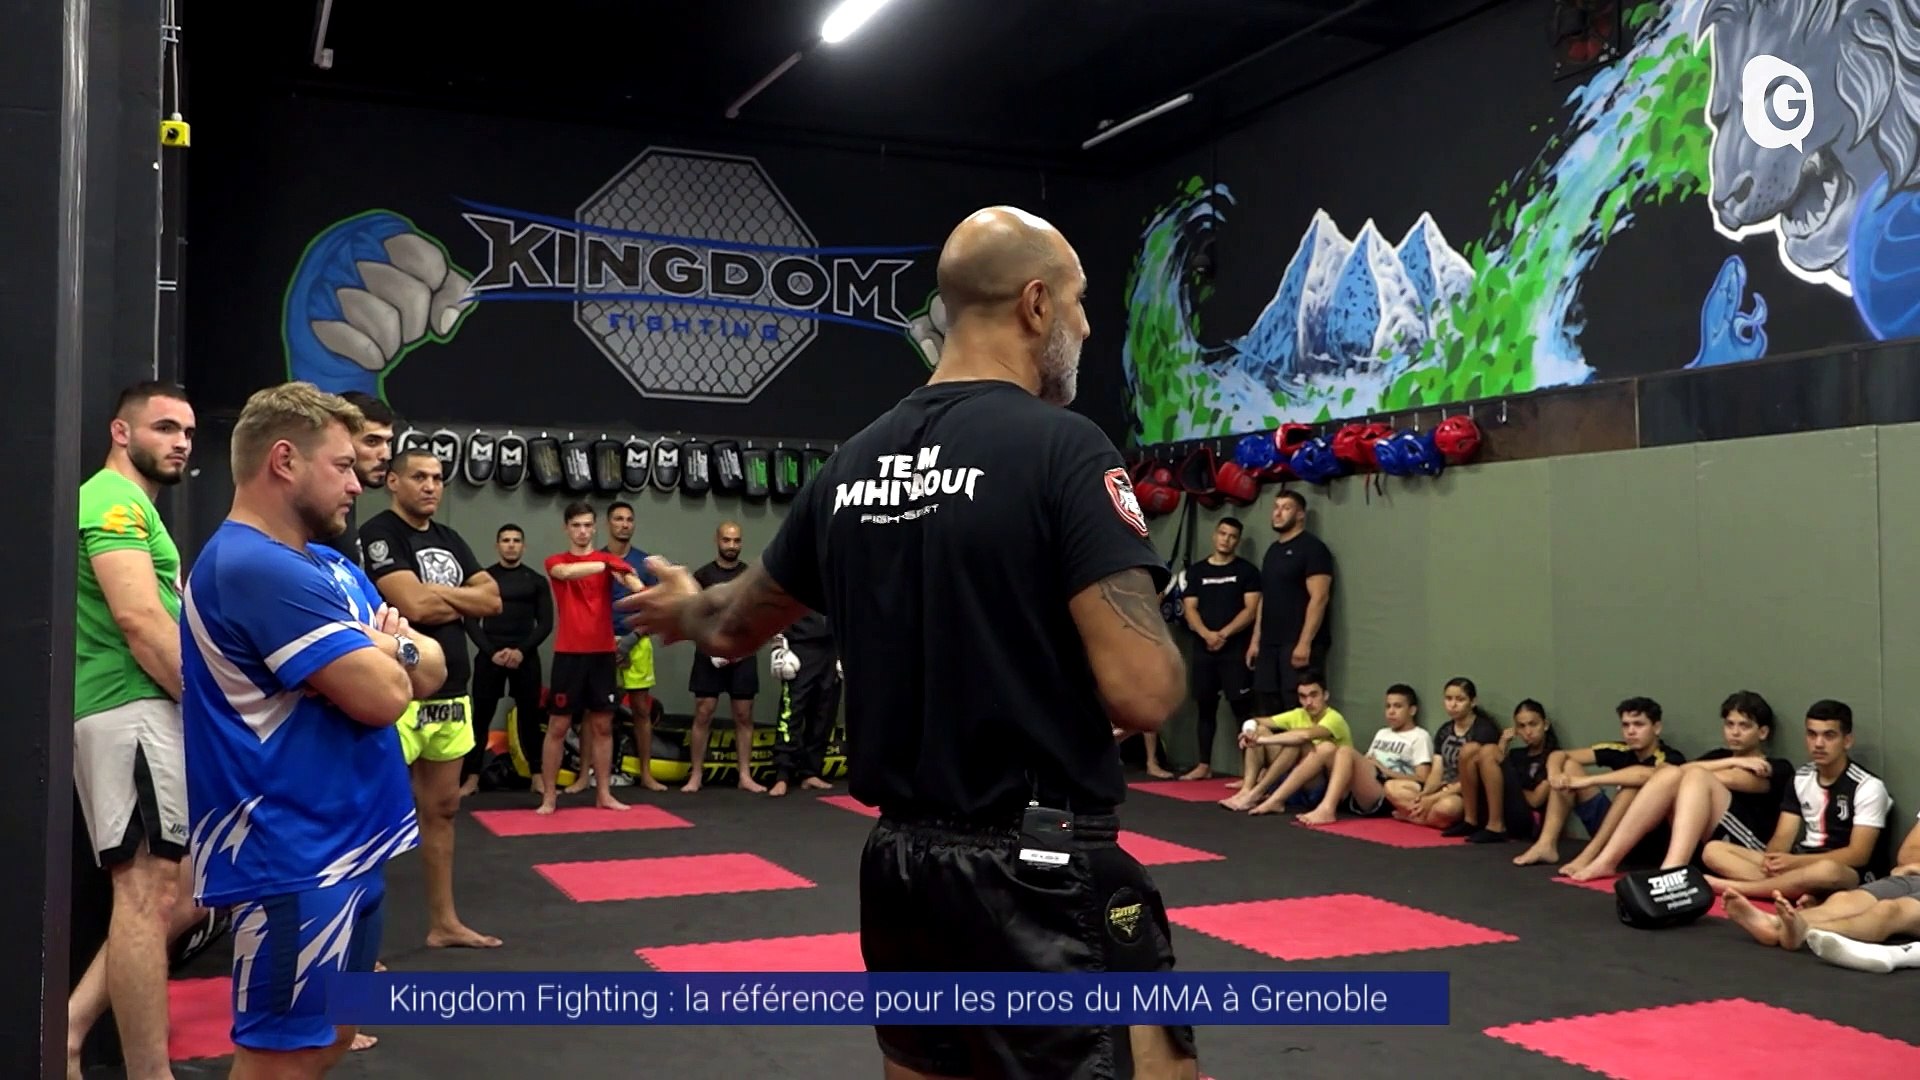 Reportage - Kingdom Fighting : la référence pour les pros du MMA à Grenoble  - Vidéo Dailymotion